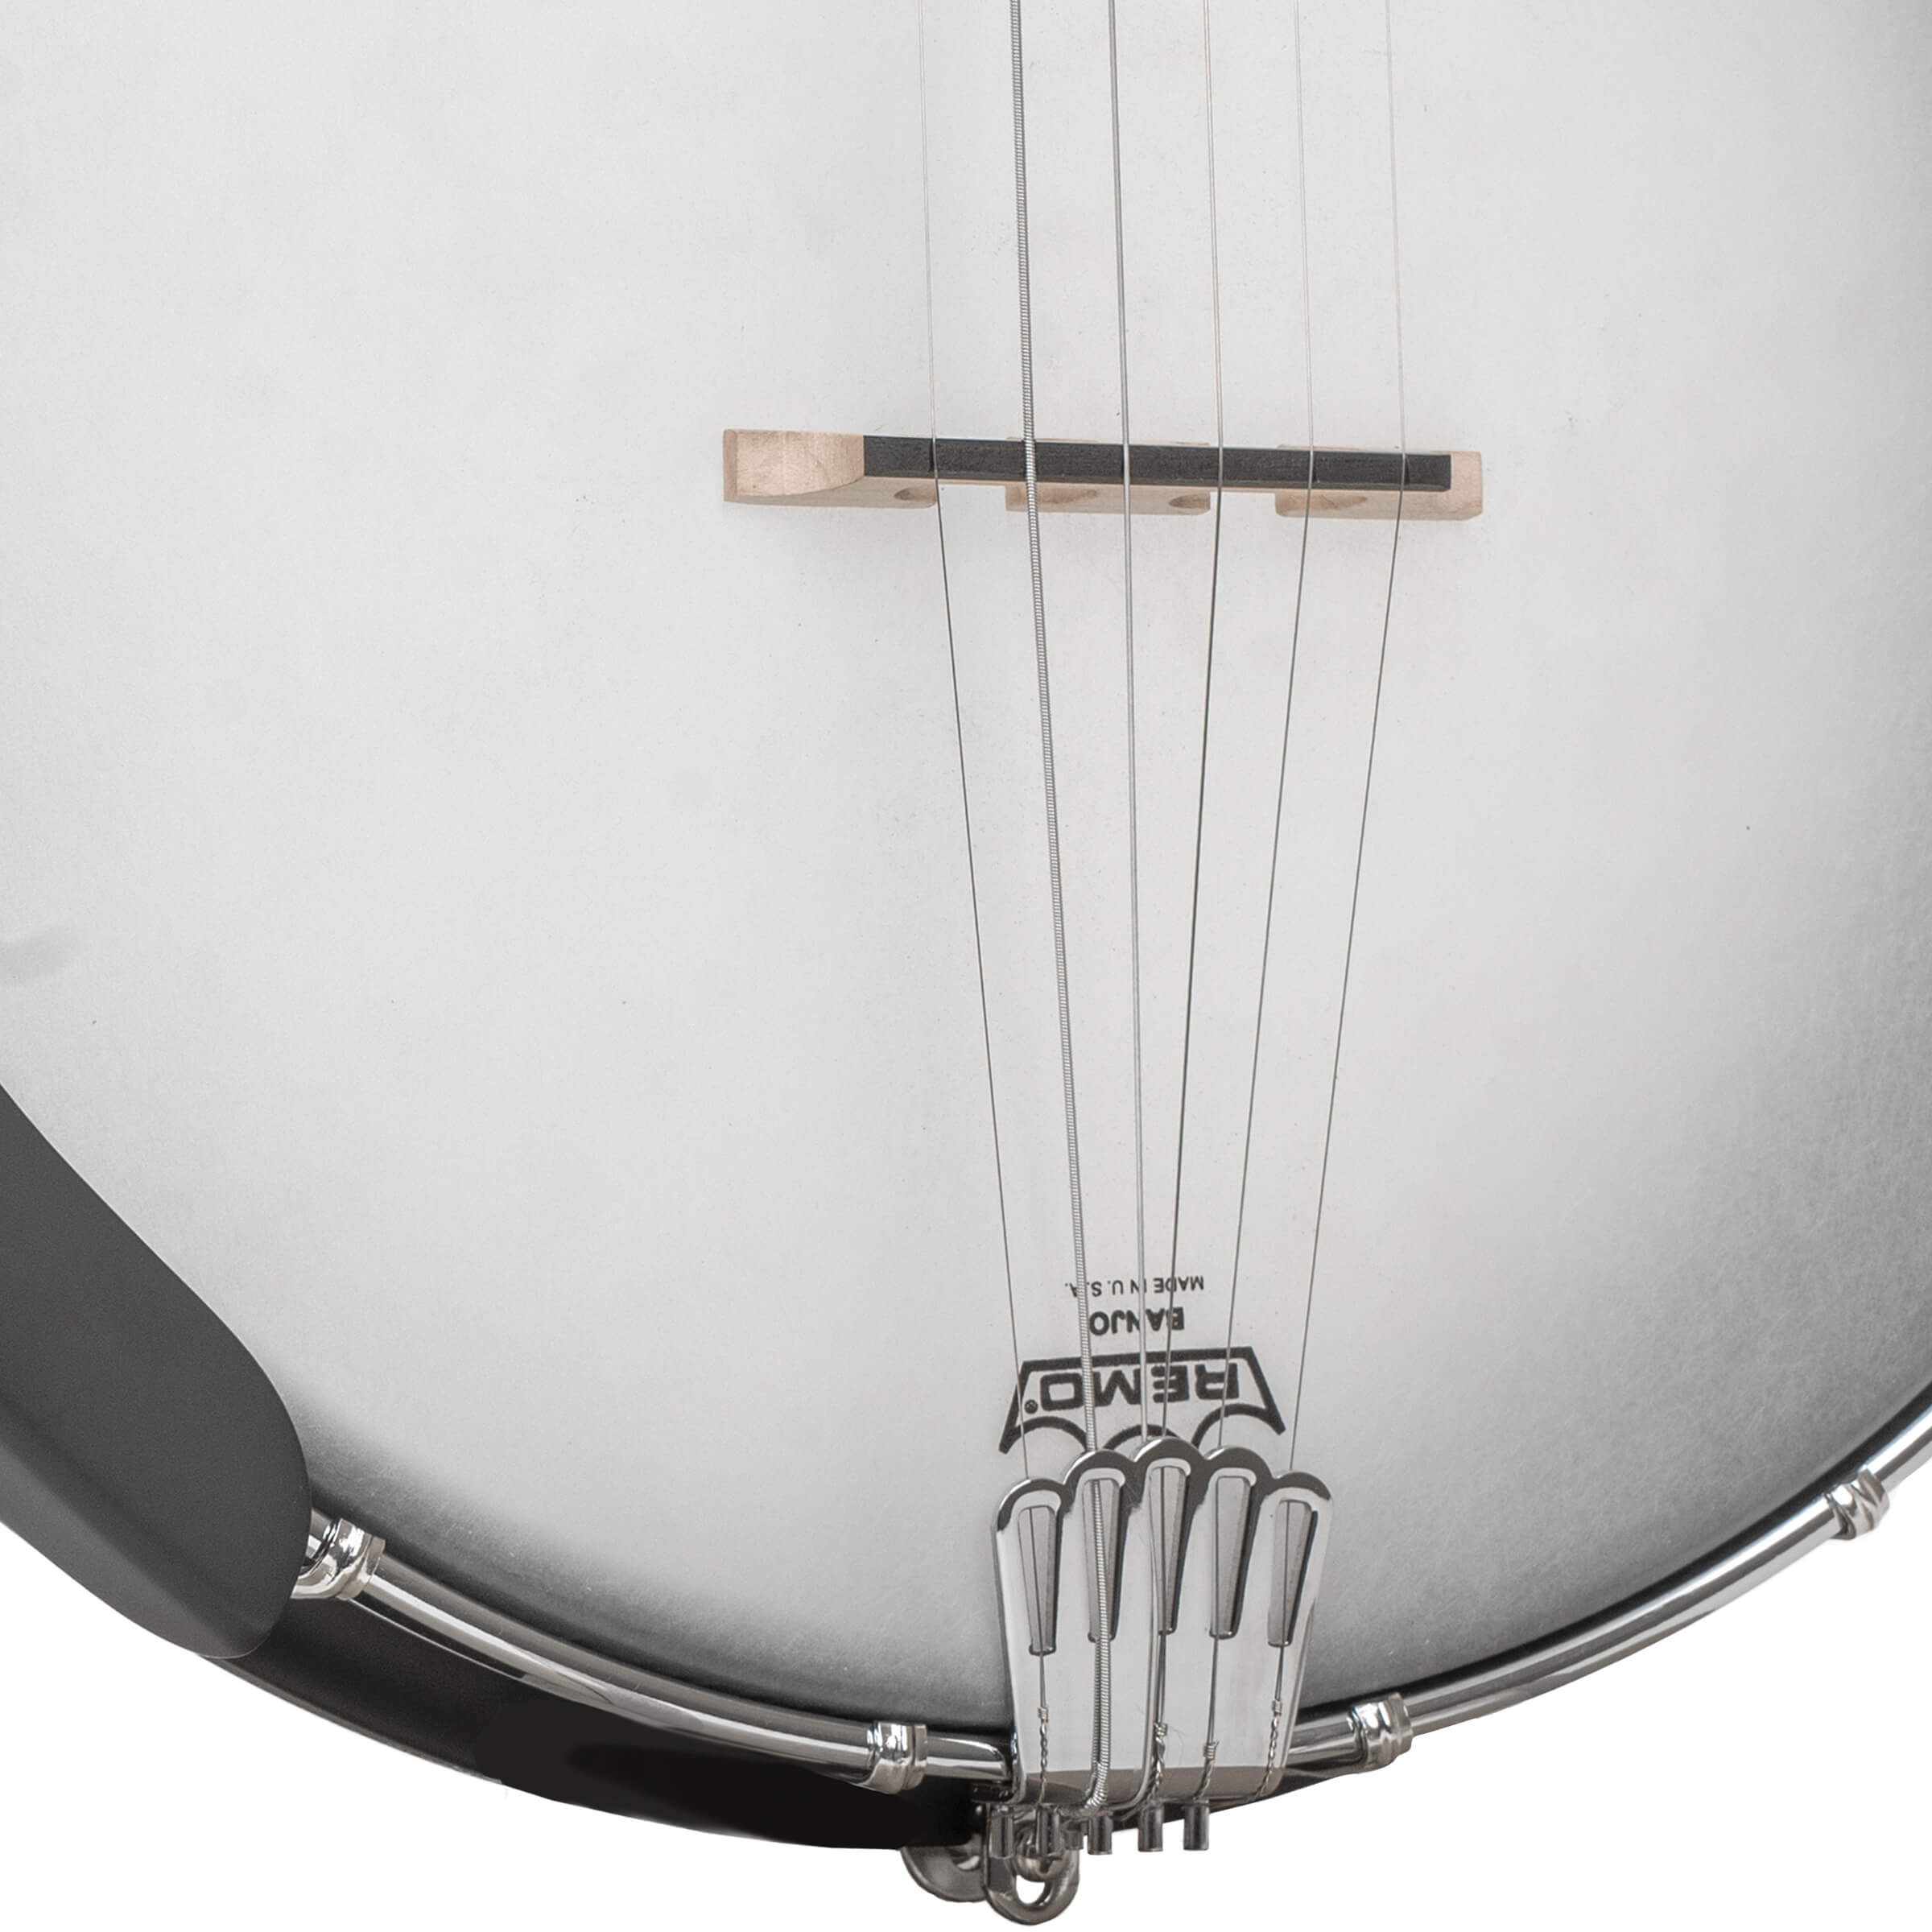 AC-5: Acoustic Composite Banjo